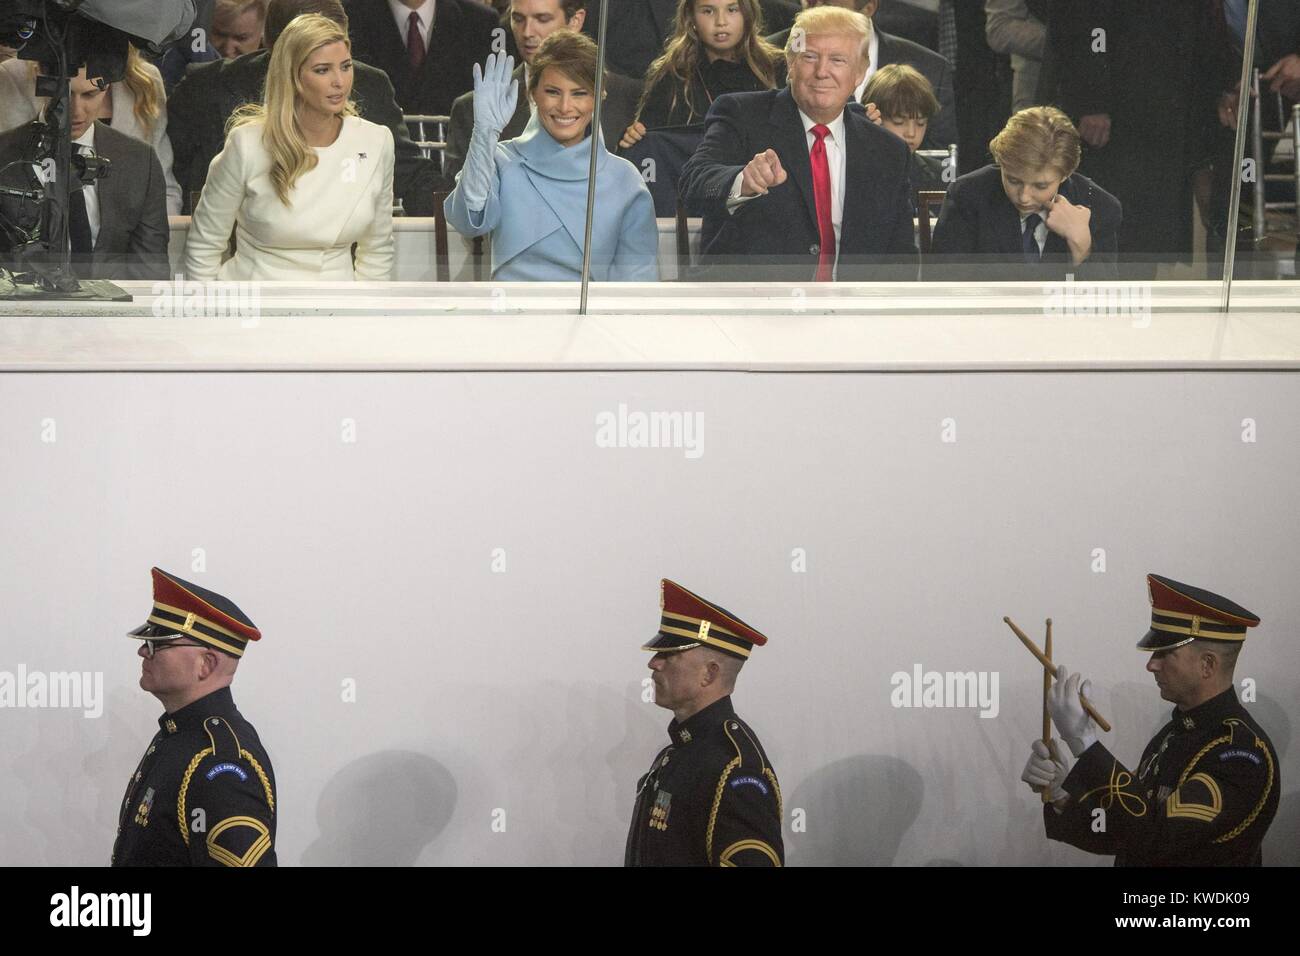 Presidente Donald Trump e i membri della sua famiglia guarda la Parata inaugurale, 20 gennaio, 2017. In prima fila, alla Casa Bianca il riesame, L-R: Ivanka Trump, il Presidente, prima signora Melania Trump, e Barron Trump (BSLOC 2017 18 125) Foto Stock